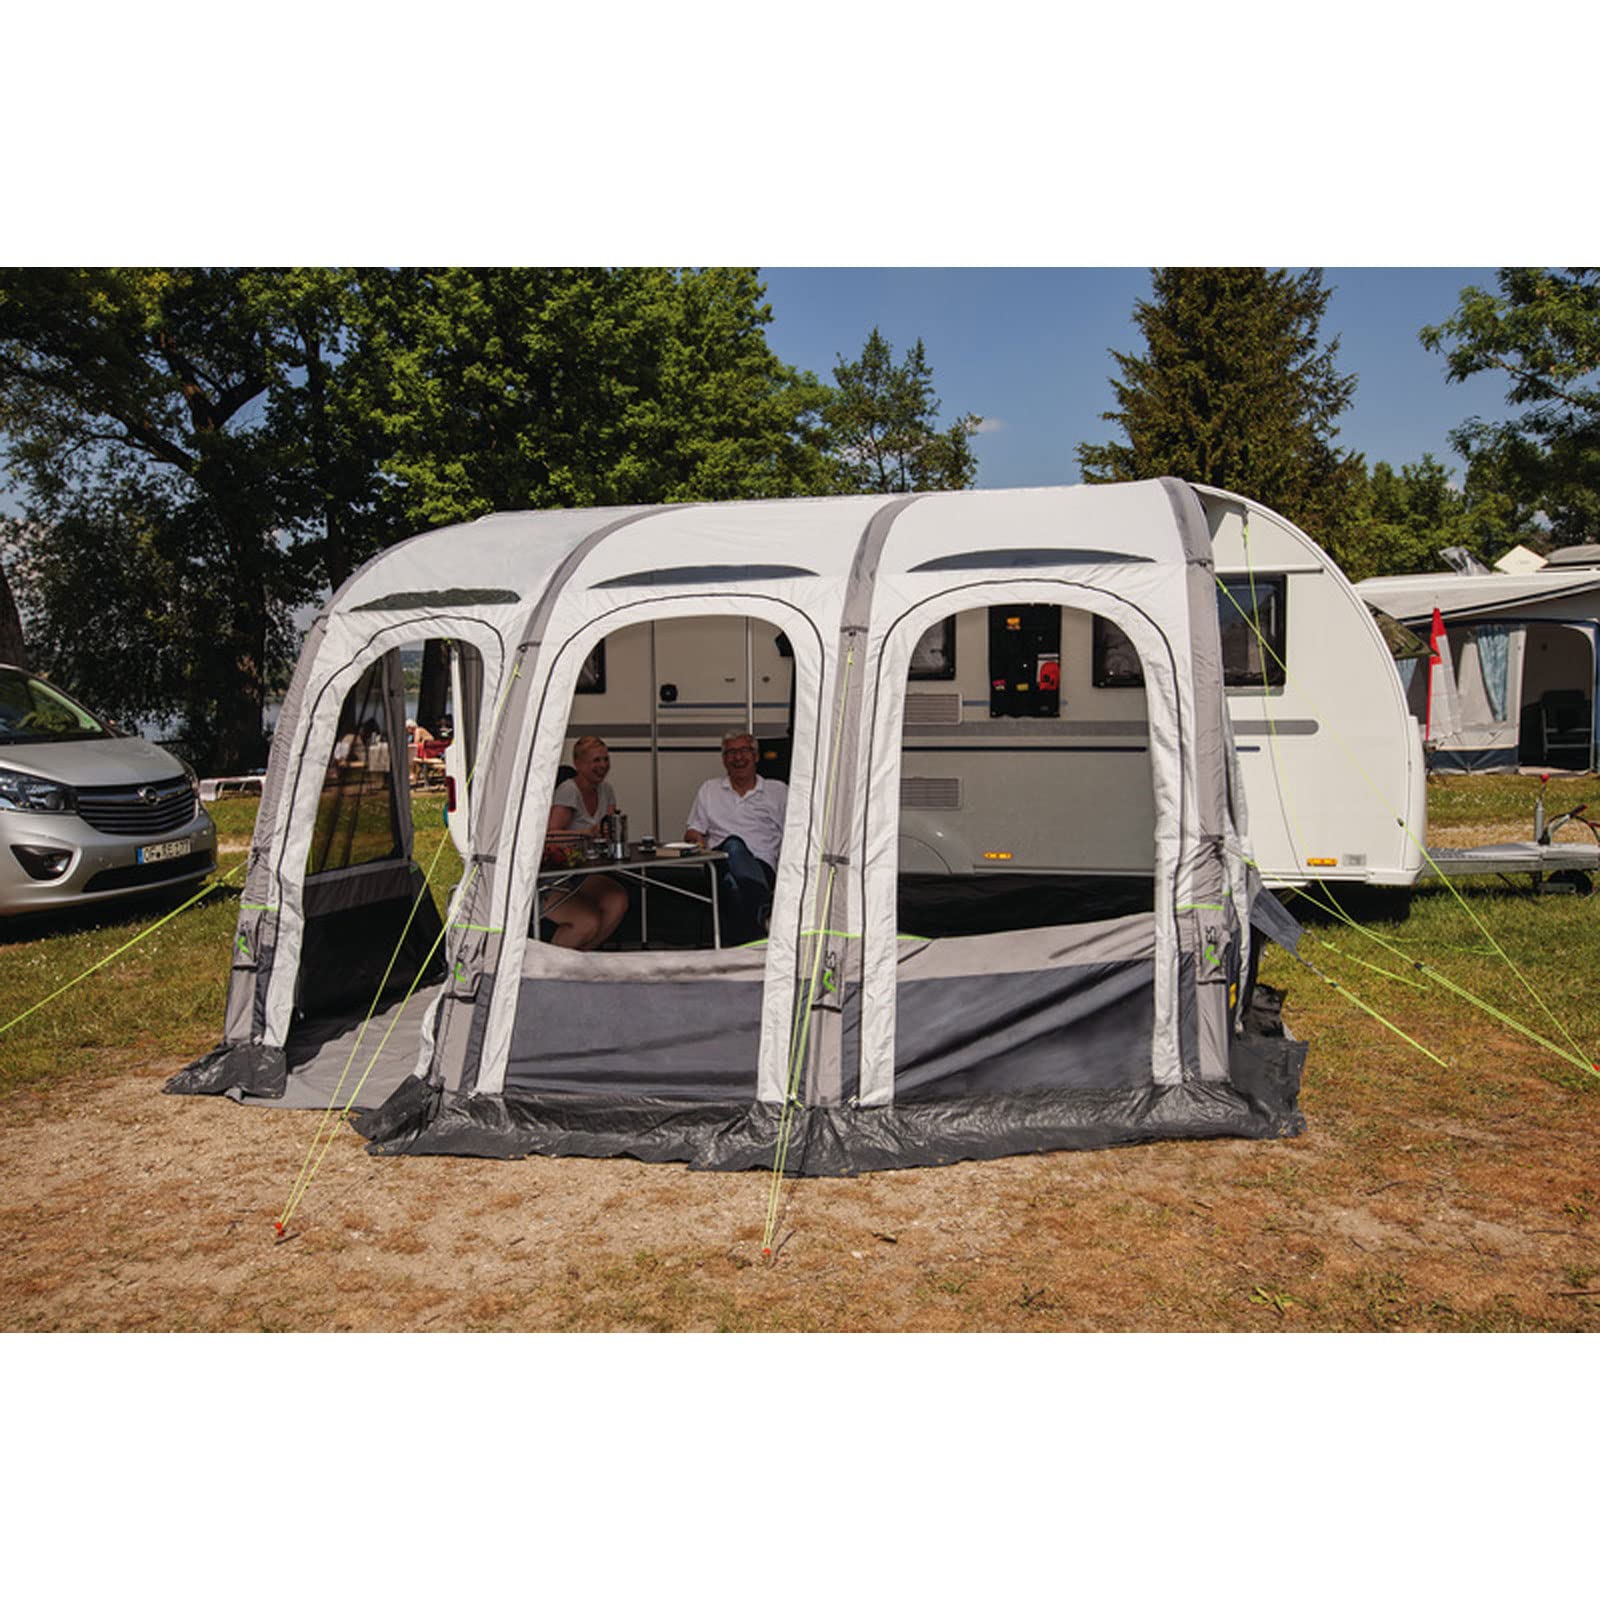 Reimo Tent Technology Vorzelt Marina Air aufblasbar Luftvorzelt versch. Größen Zelt für Wohnwagen Wohnmobil Campingbus (390cm) von Reimo Tent Technology